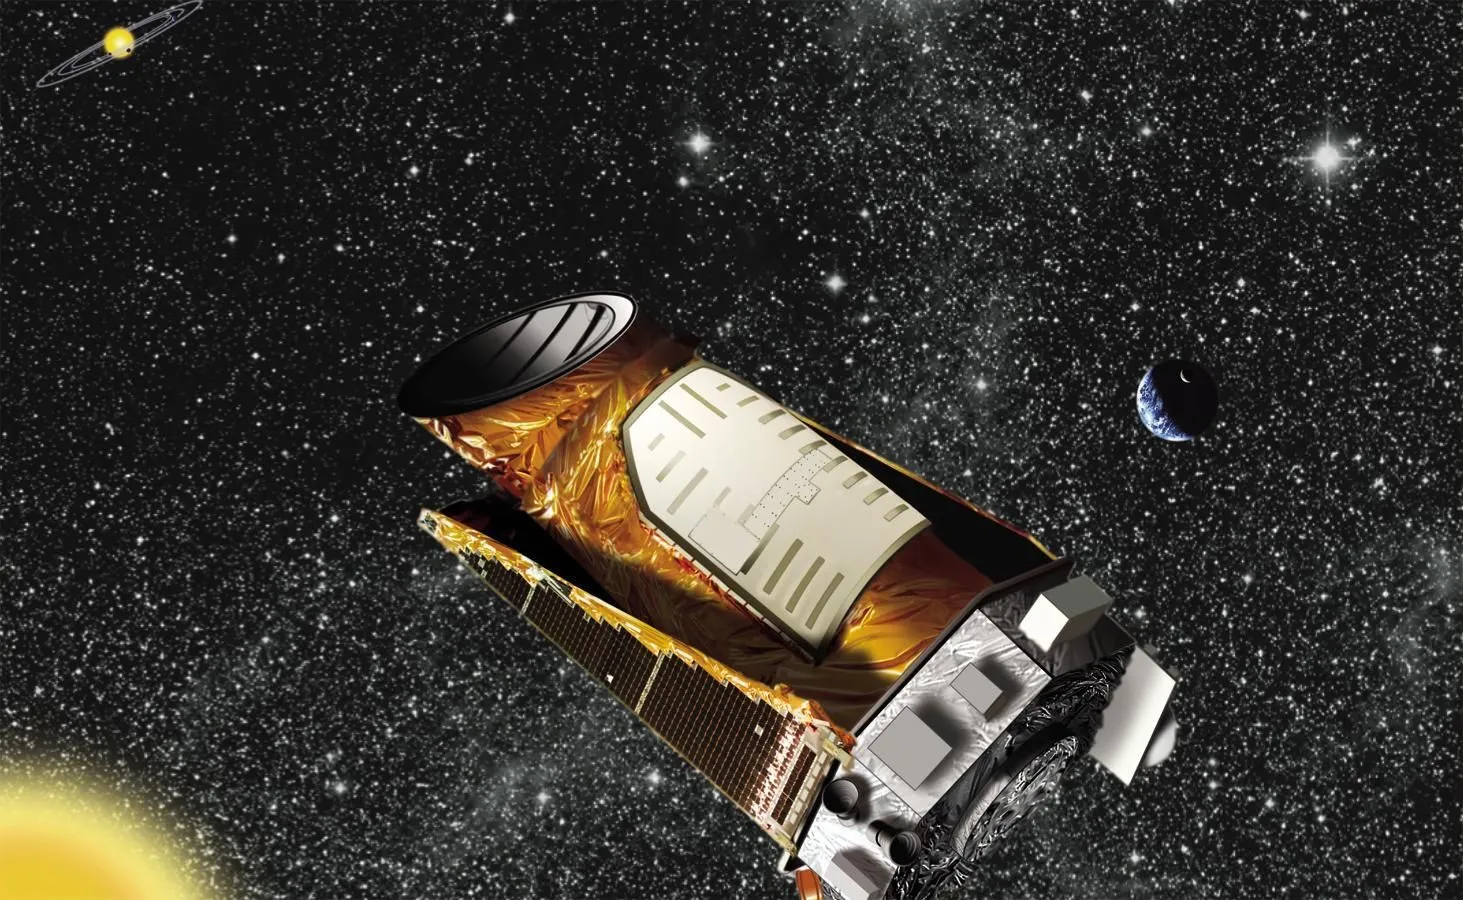 Ein Weltraumteleskop von Coper mit grauem Sockel neigt sich inmitten eines schwarzen Sternenhintergrunds nach oben.